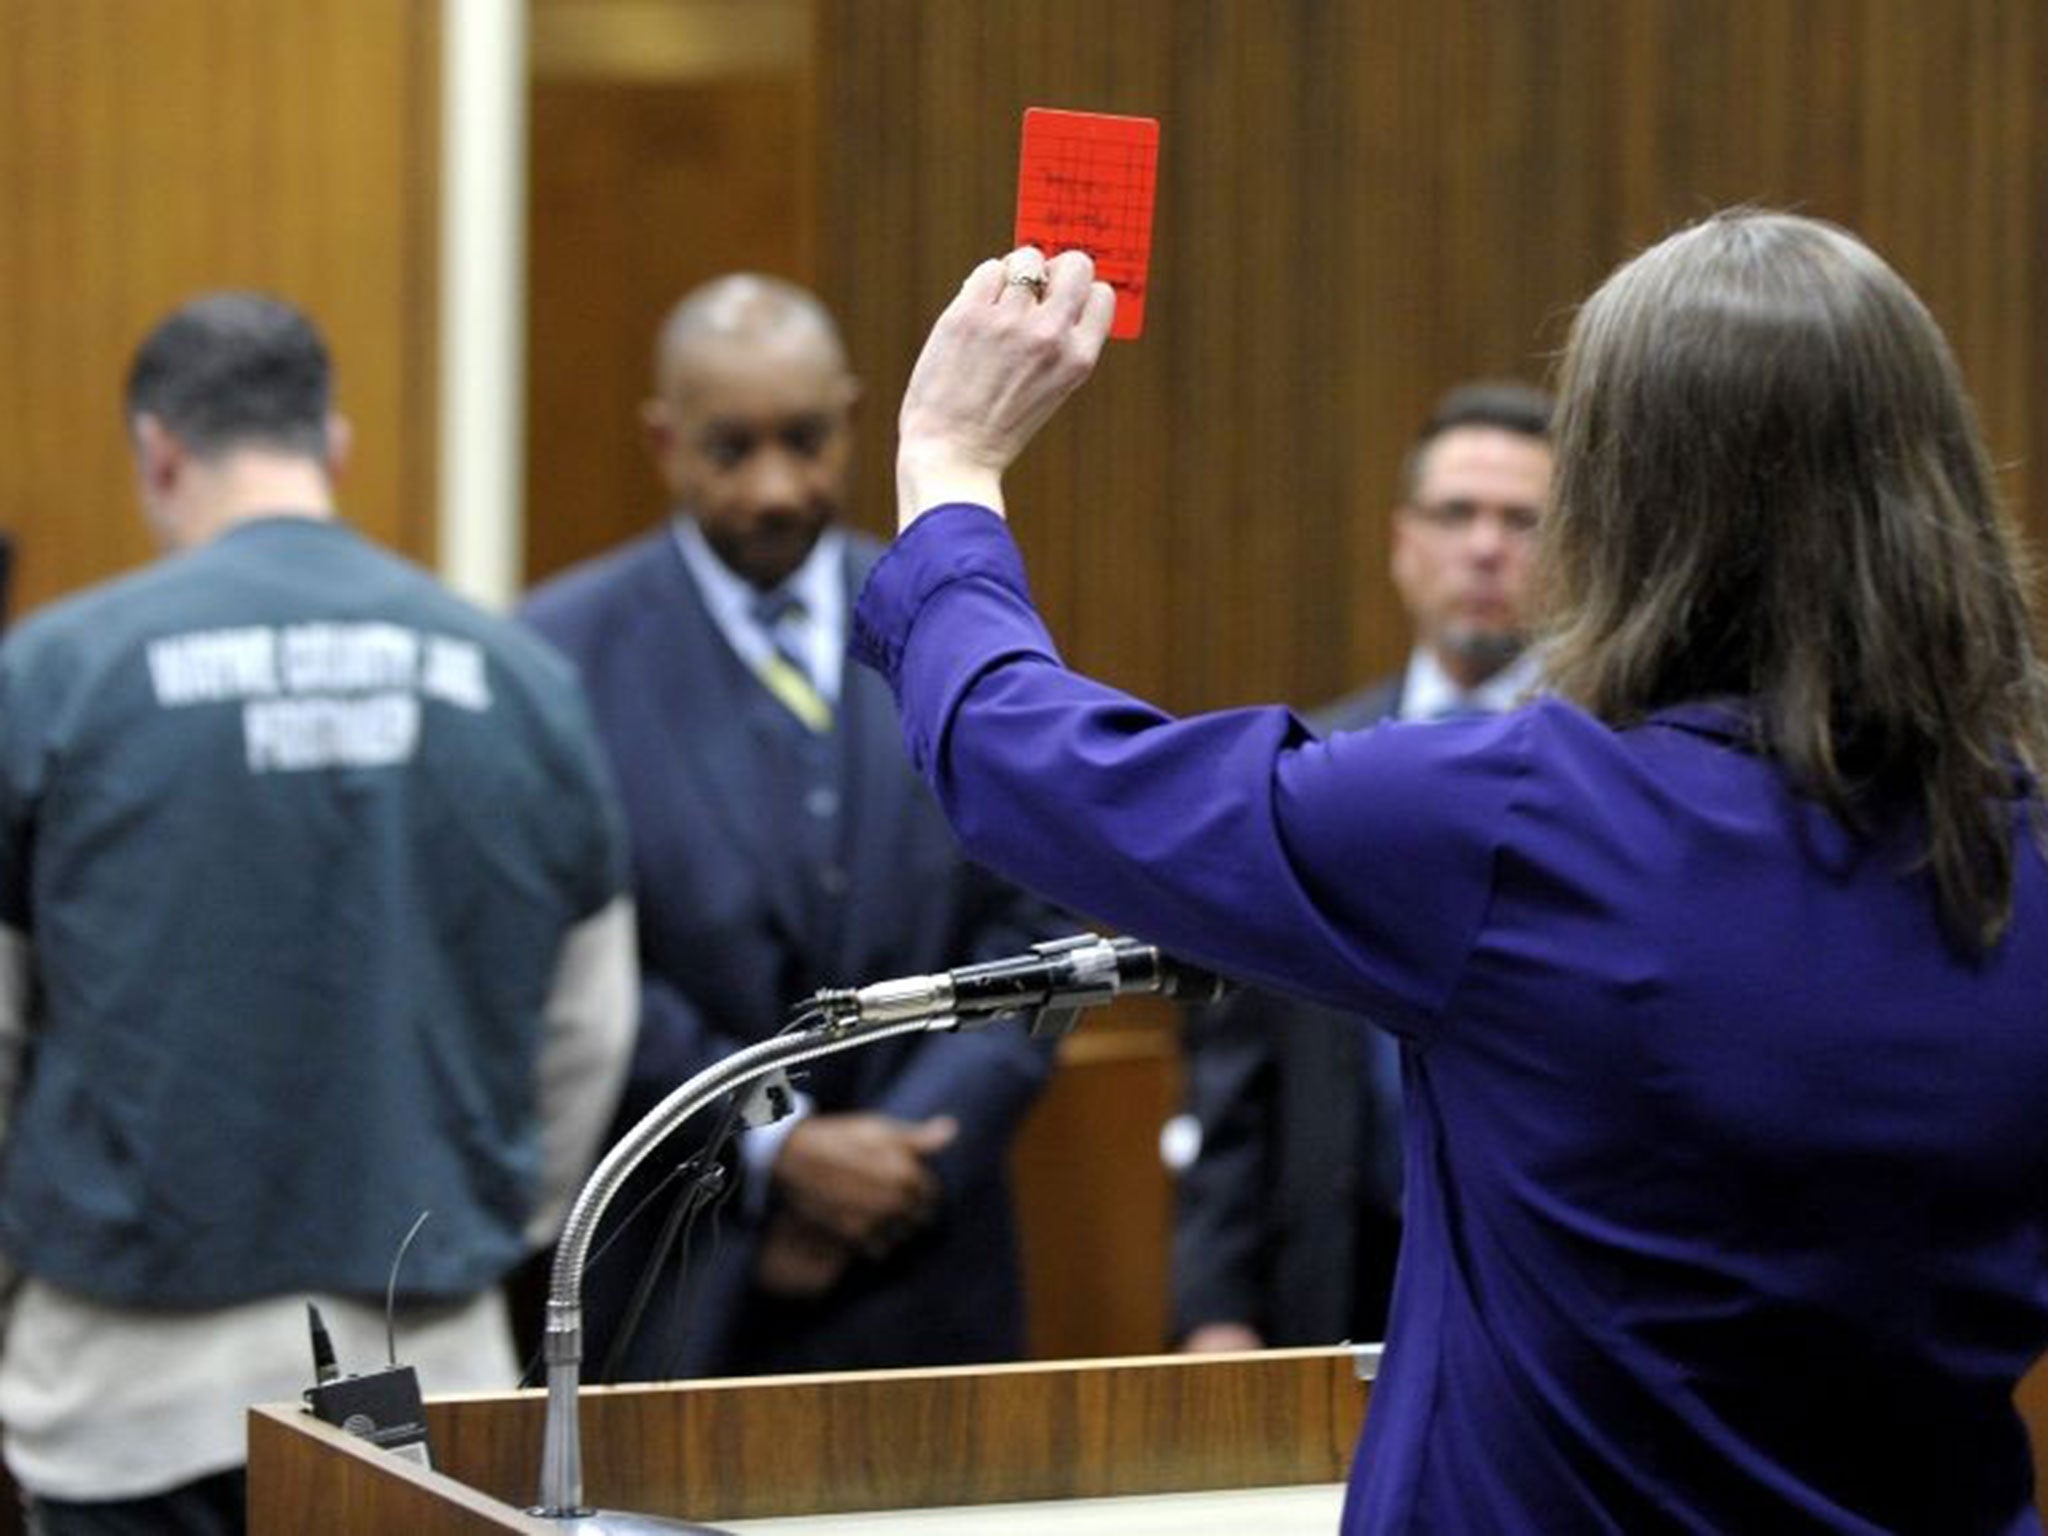 Jon Bieniewicz's widow, Kris Bieniewicz, holds up a red card to her husband's killer in court